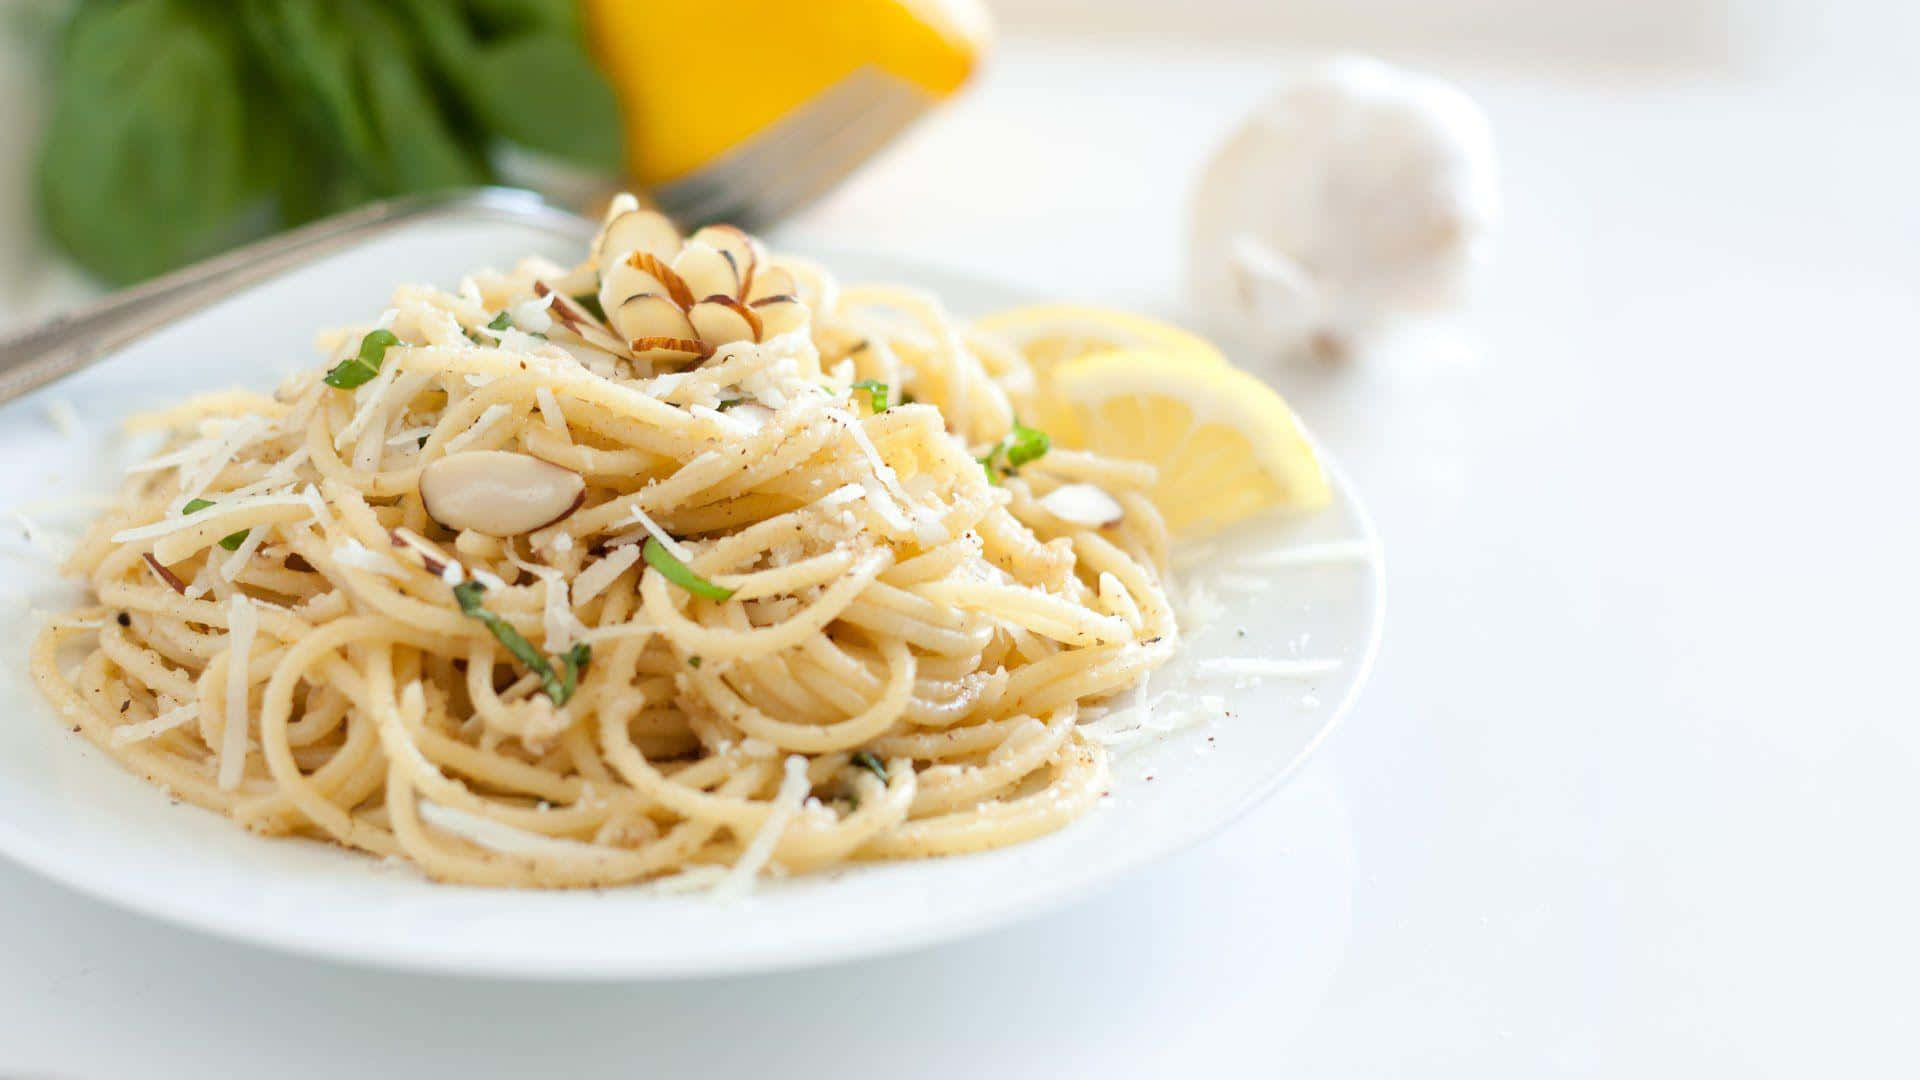 Enjoy the delicious Italian classic, spaghetti aglio e olio